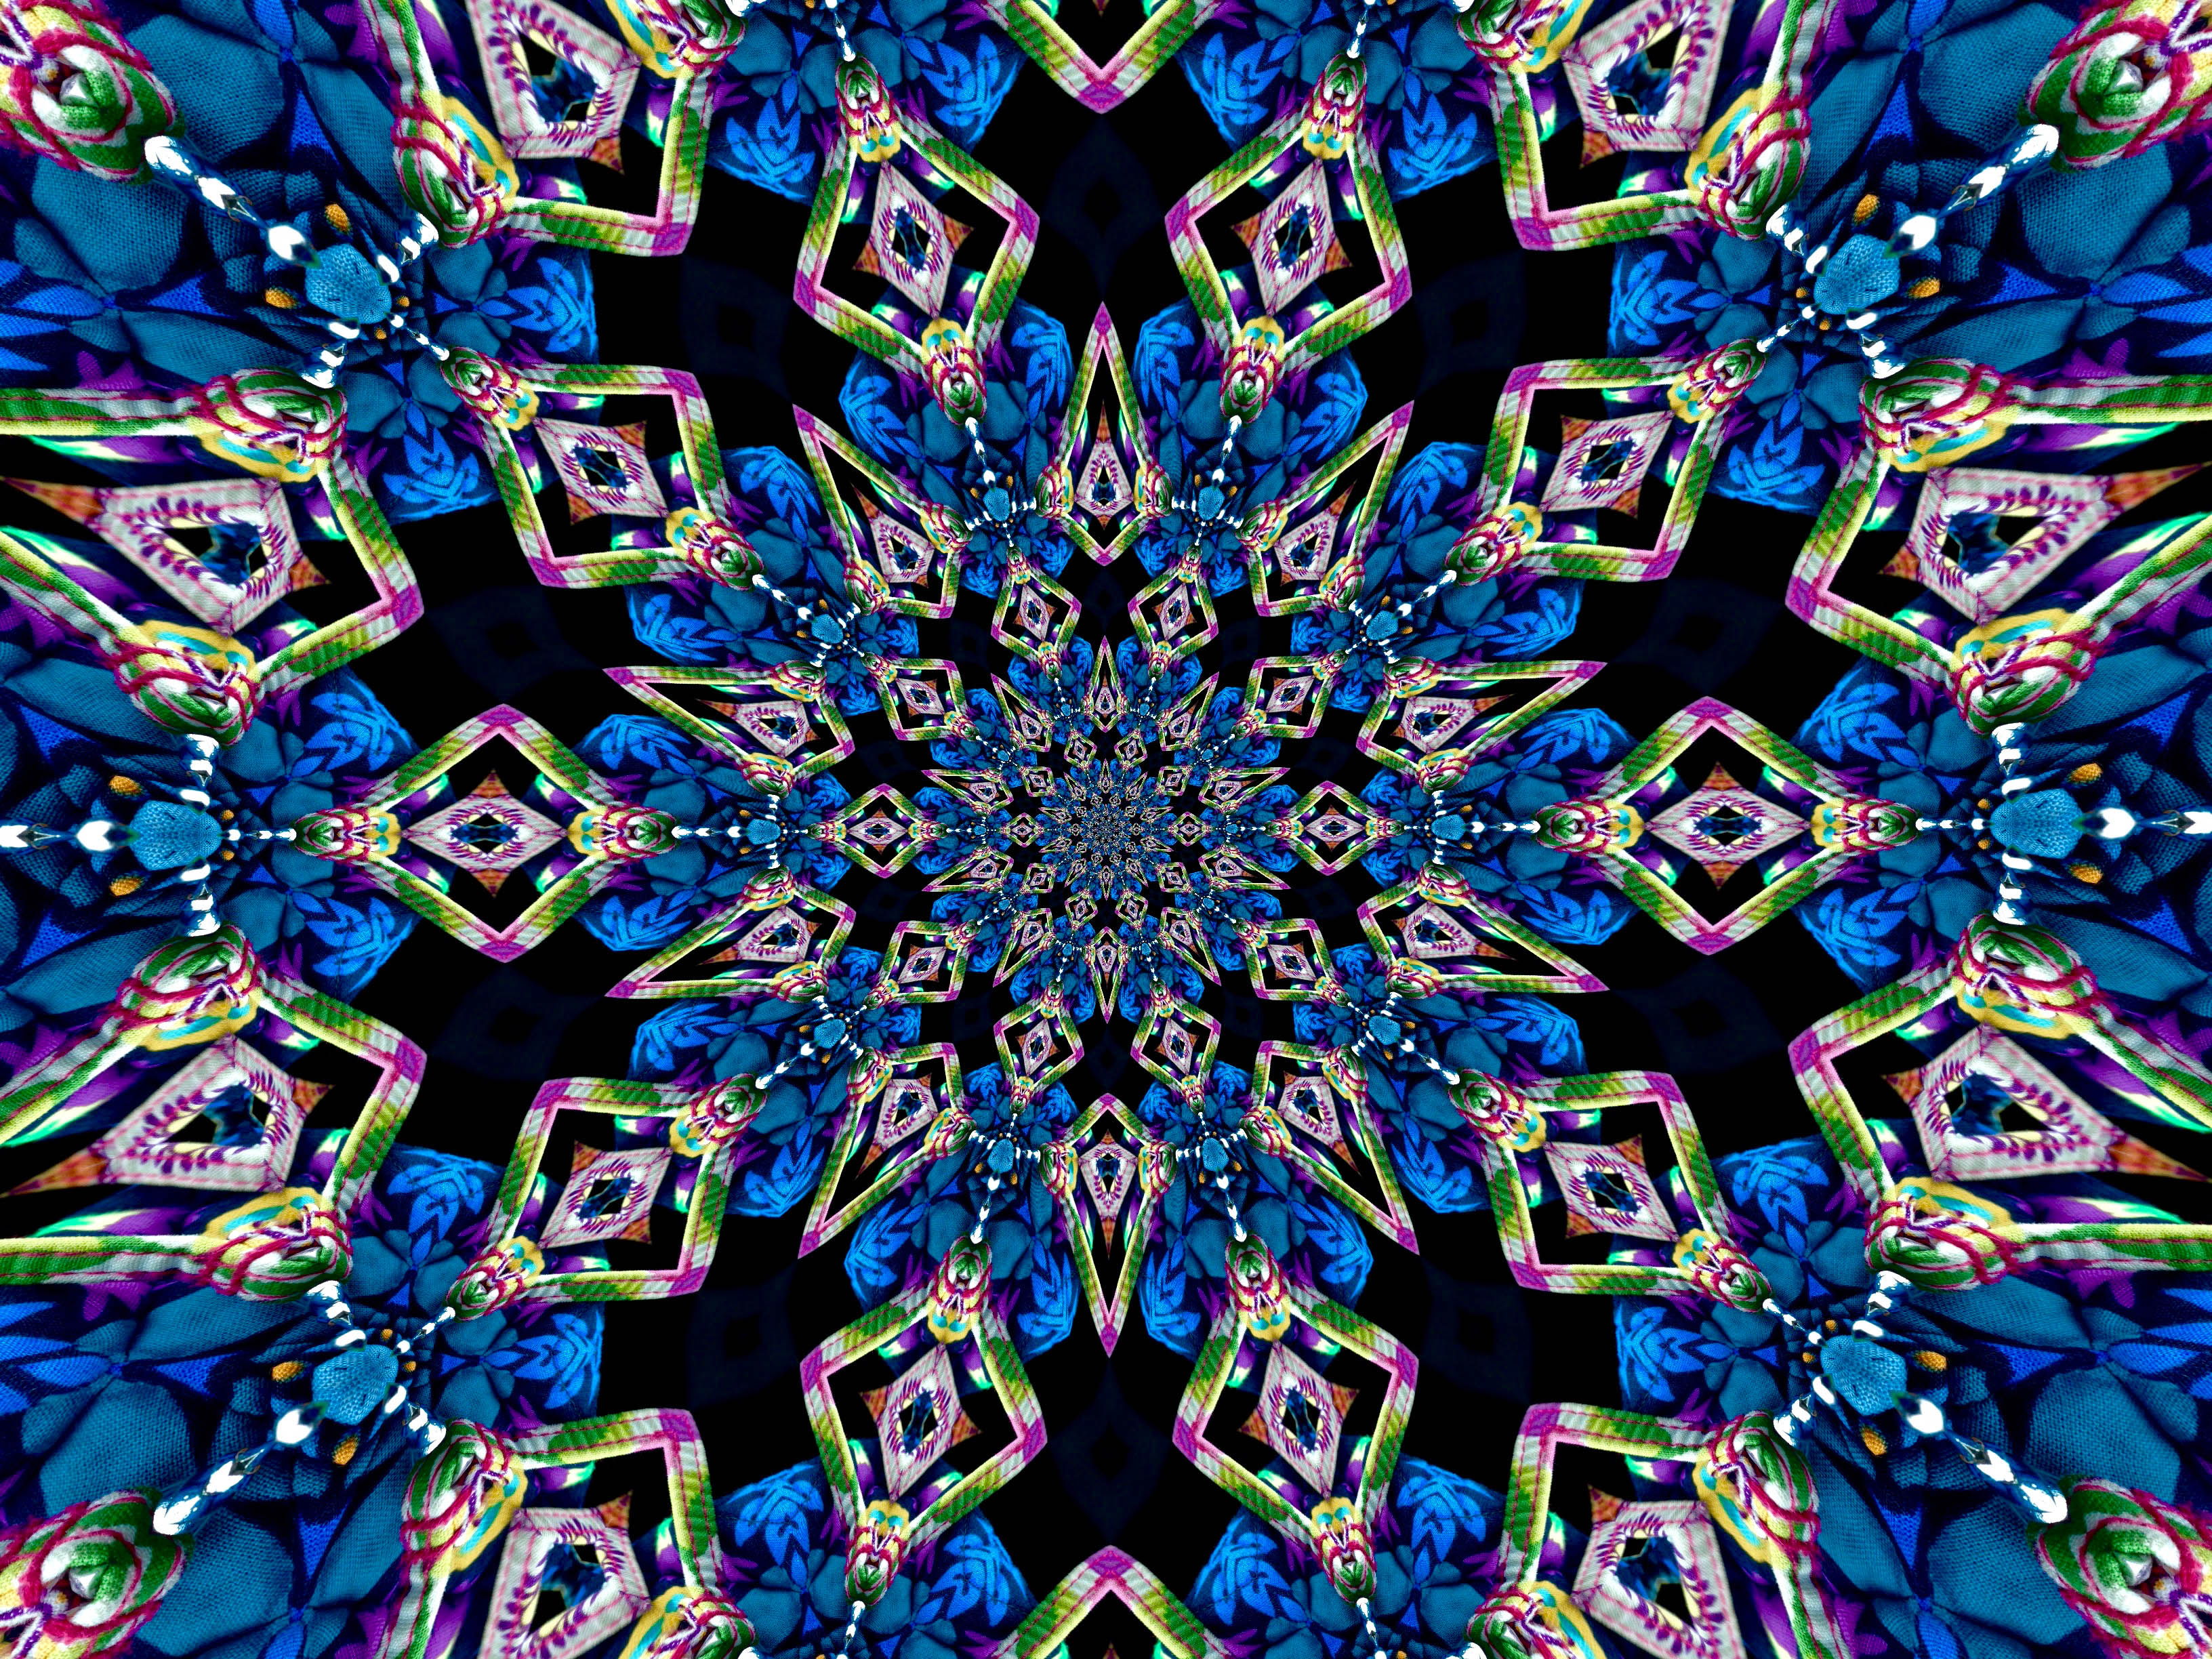 kaleidoscope art